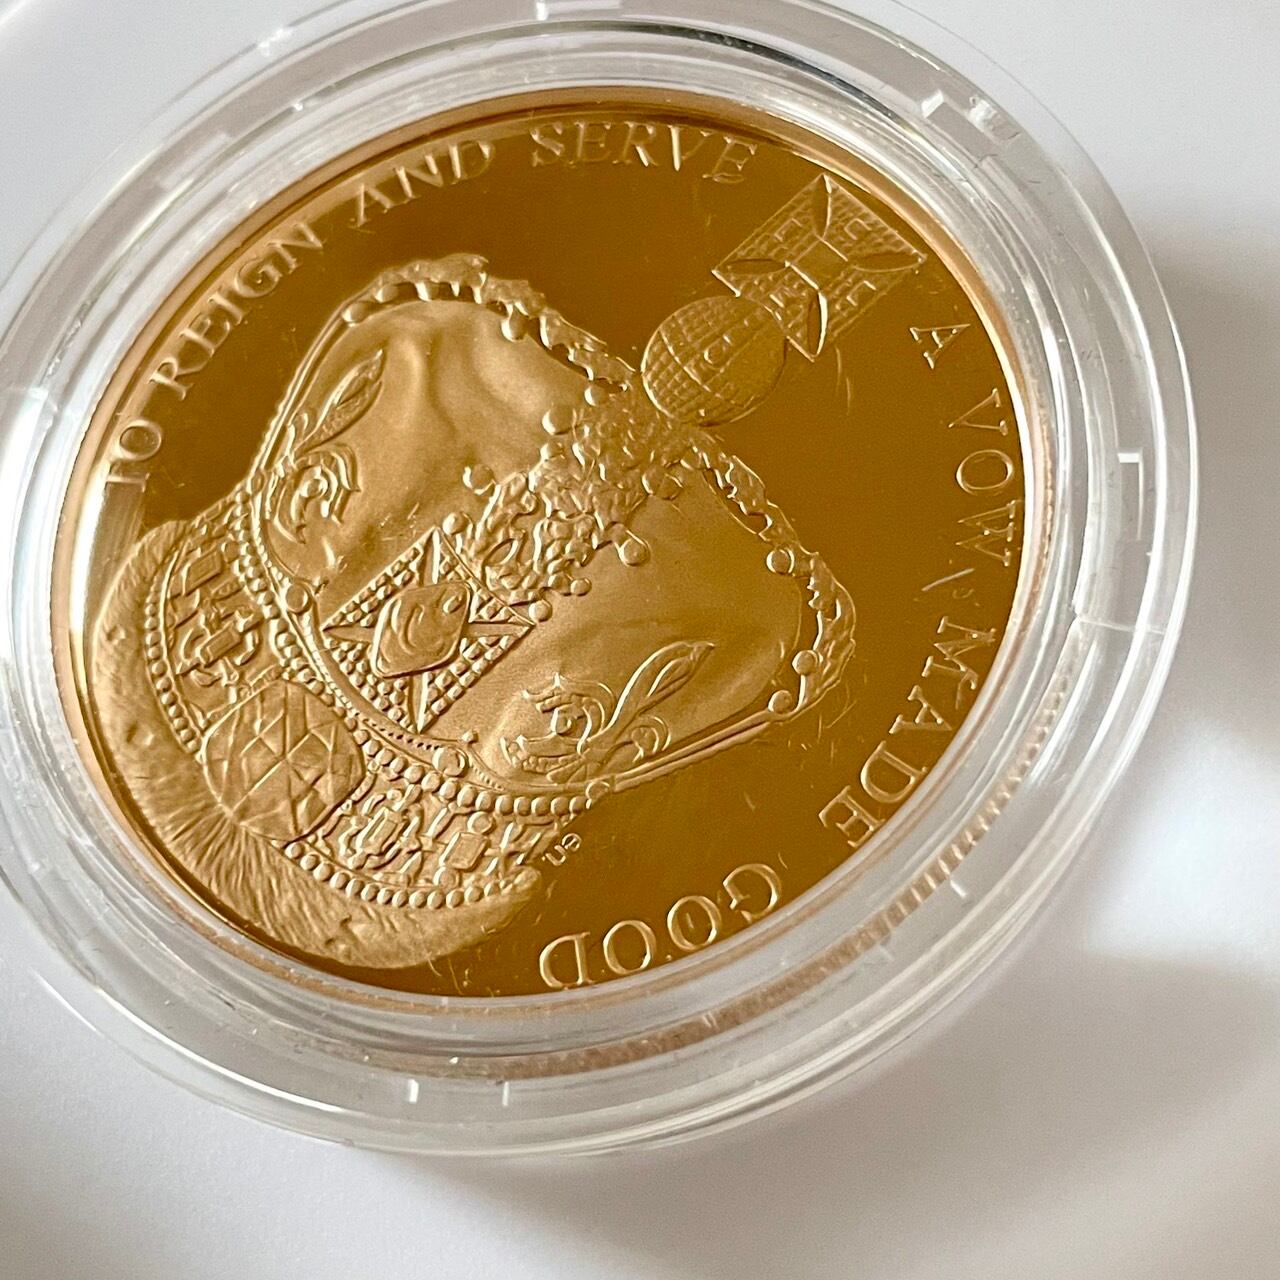 2013年エリザベス女王陛下の戴冠60周年記念 5ポンドプルーフ金貨